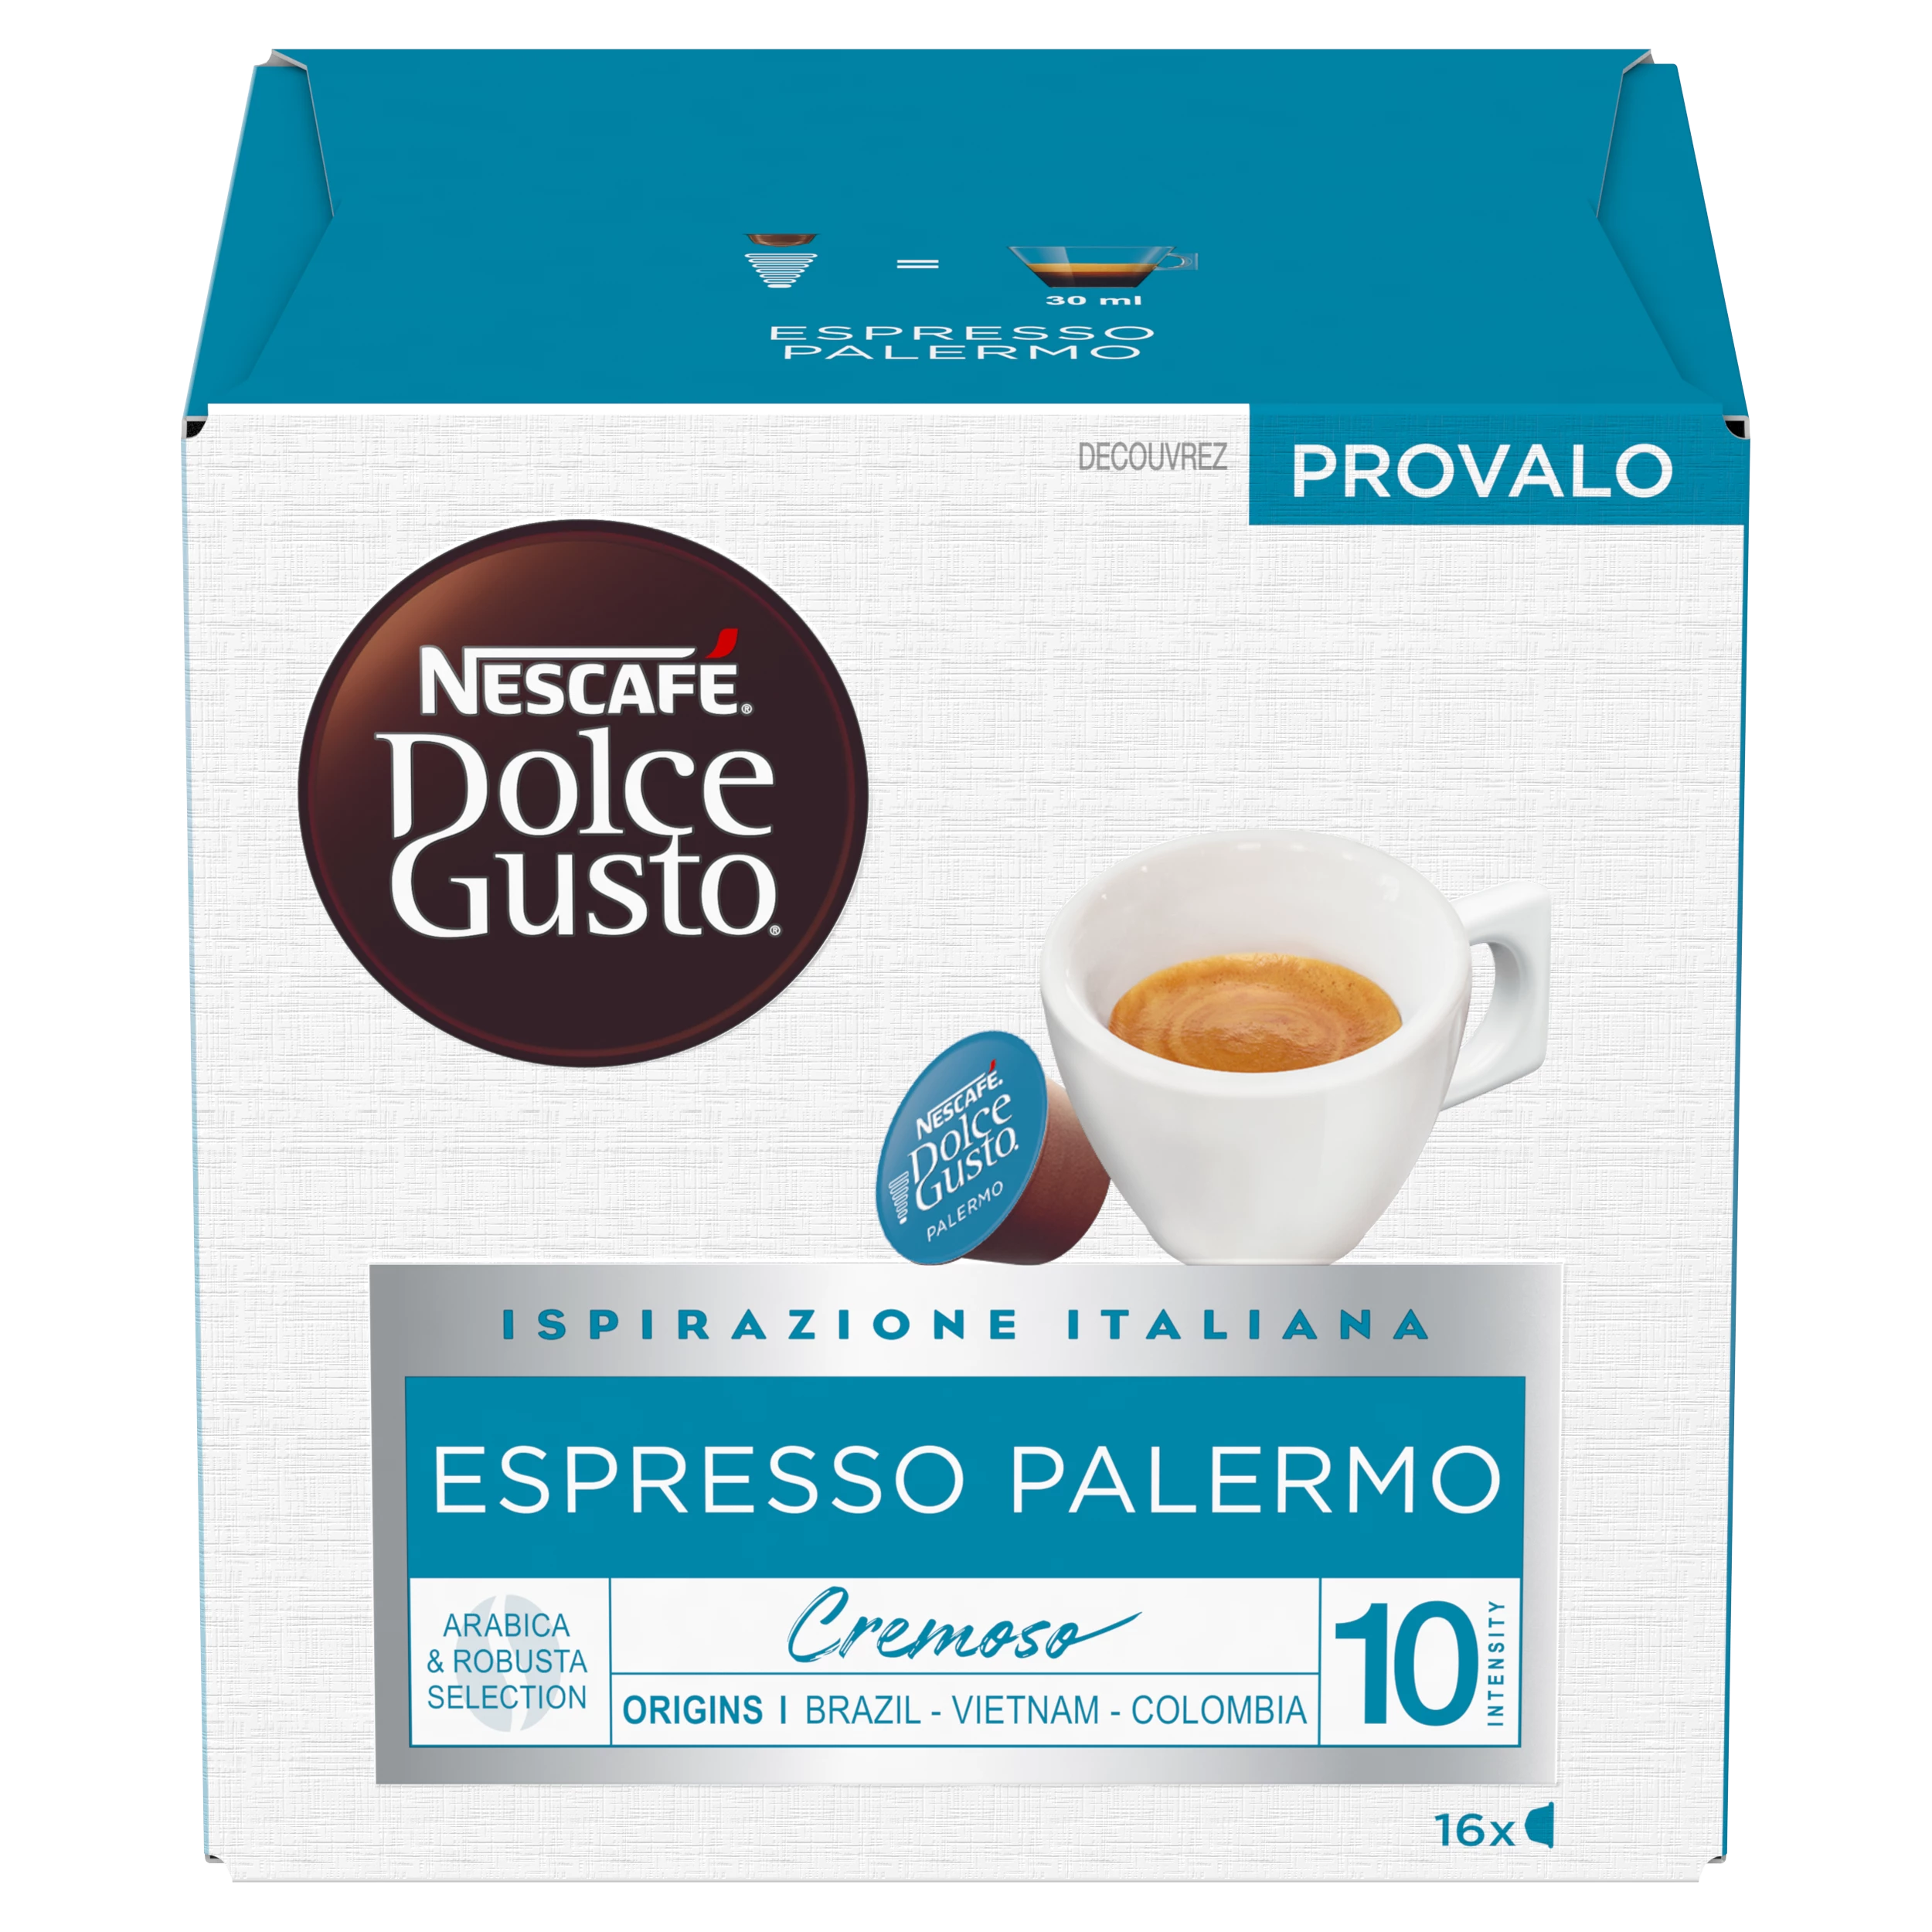 Espresso palermo X16 112g - NESCAFE DOLCE GUSTO